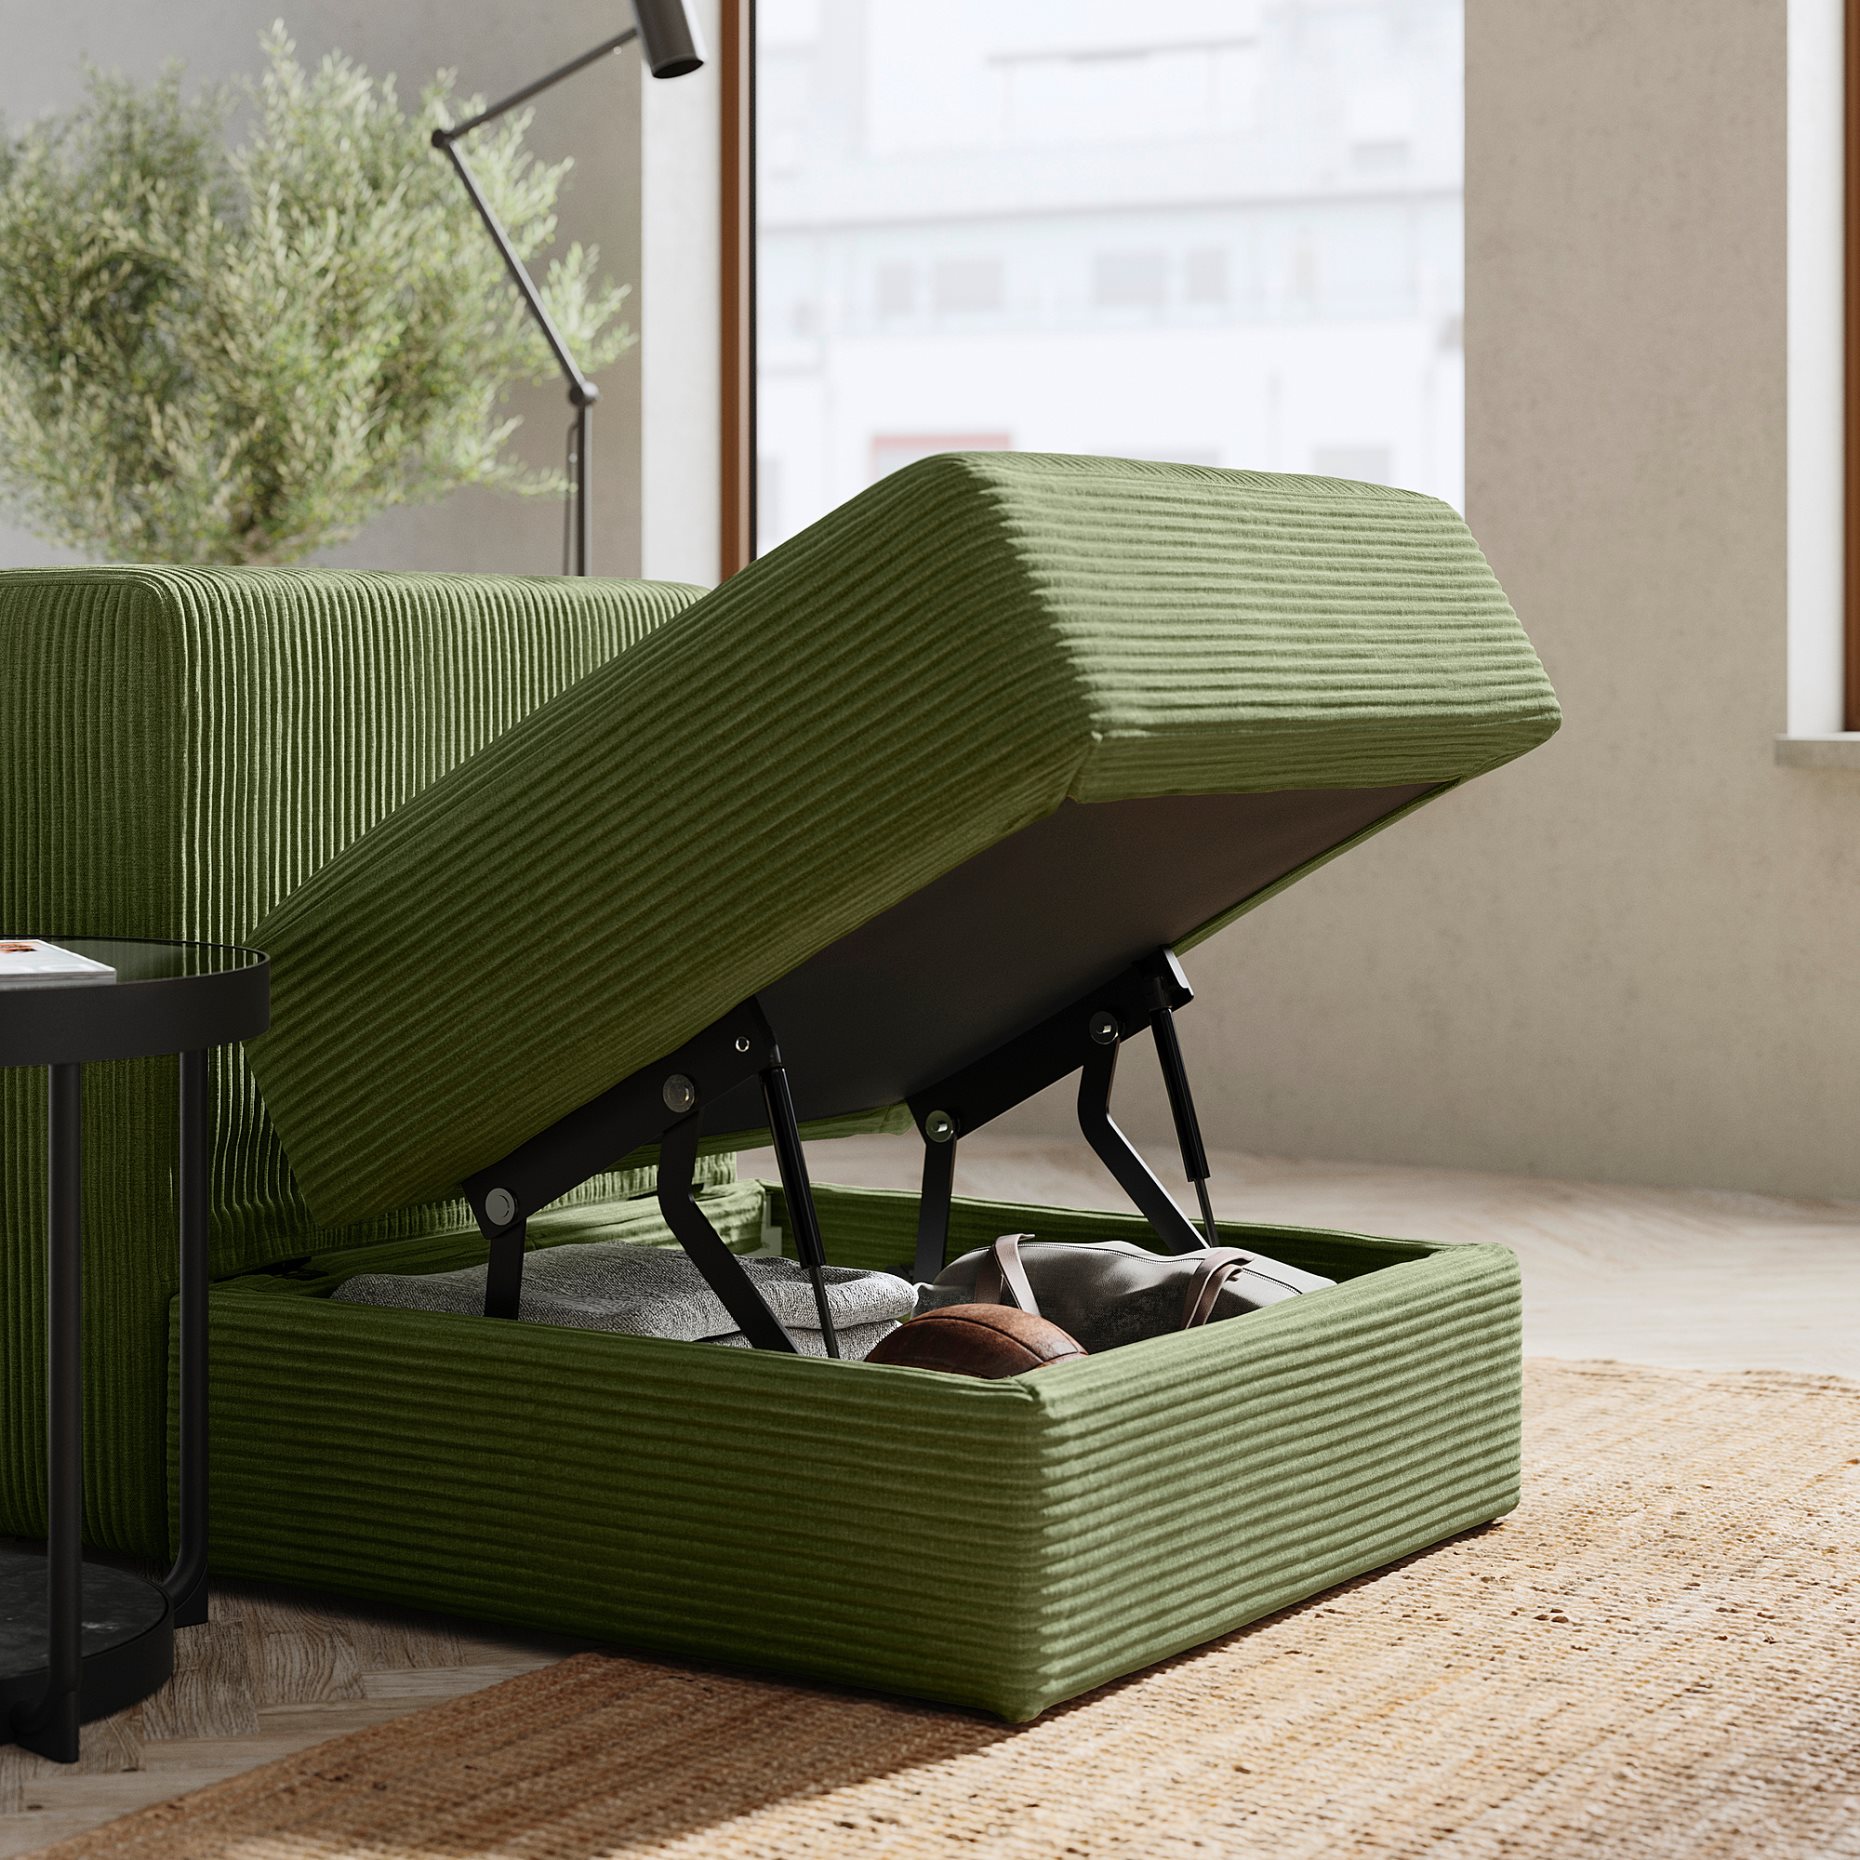 JÄTTEBO, 2-seat modular sofa with headrest, 495.104.01